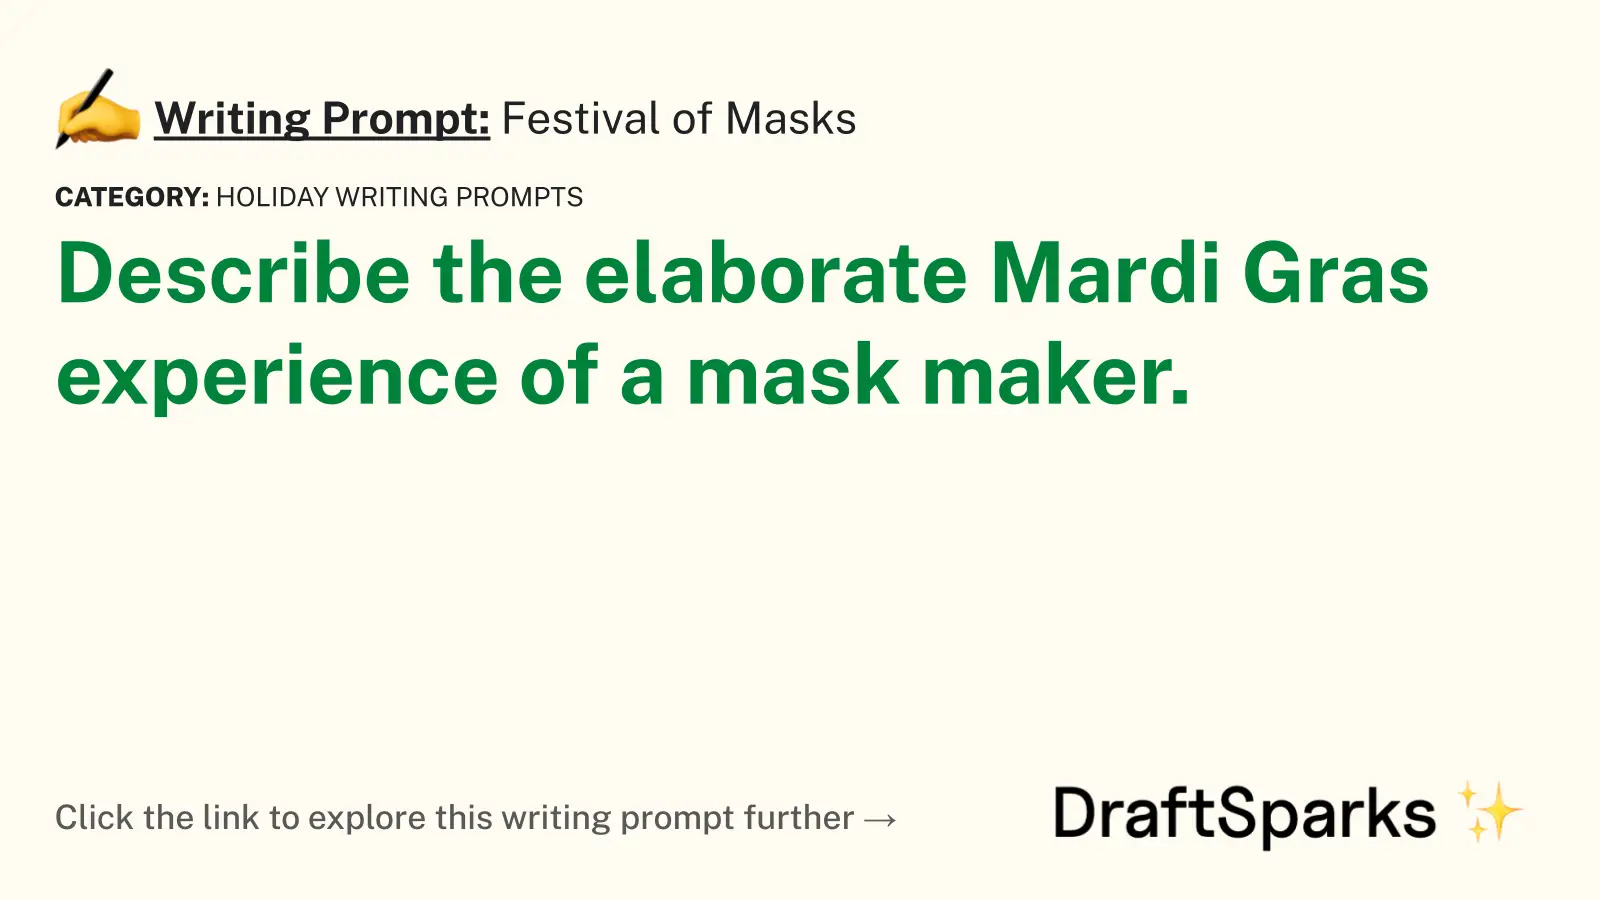 Festival of Masks